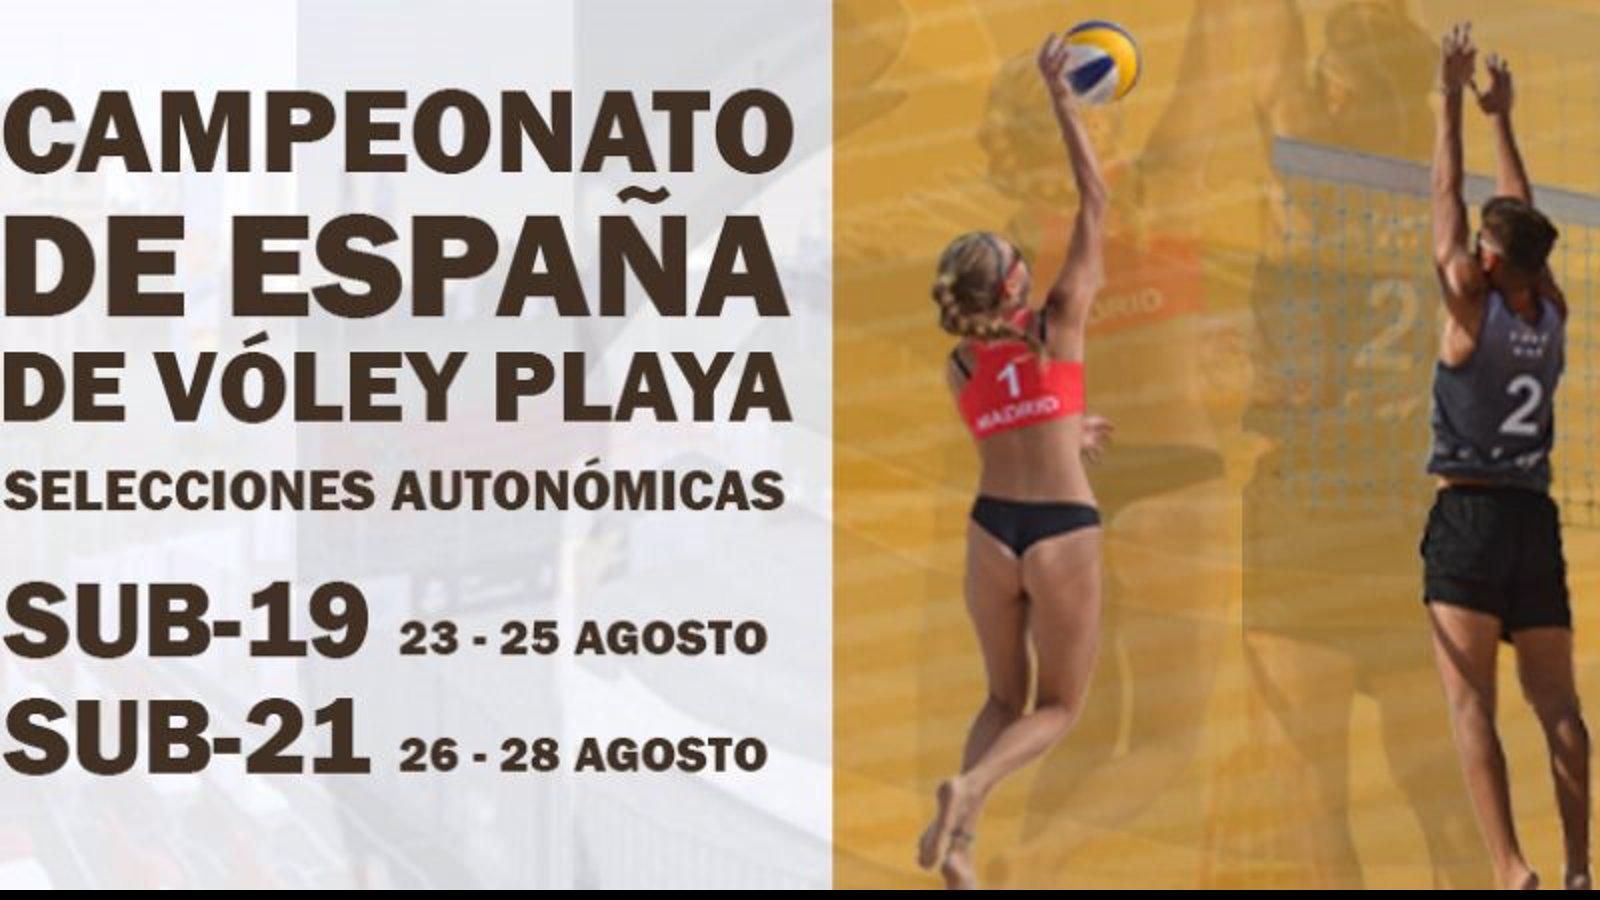 Parque Deportivo Puerta de Hierro acoge la próxima semana el Campeonato de España de Vóley Playa por Autonomías Sub-21